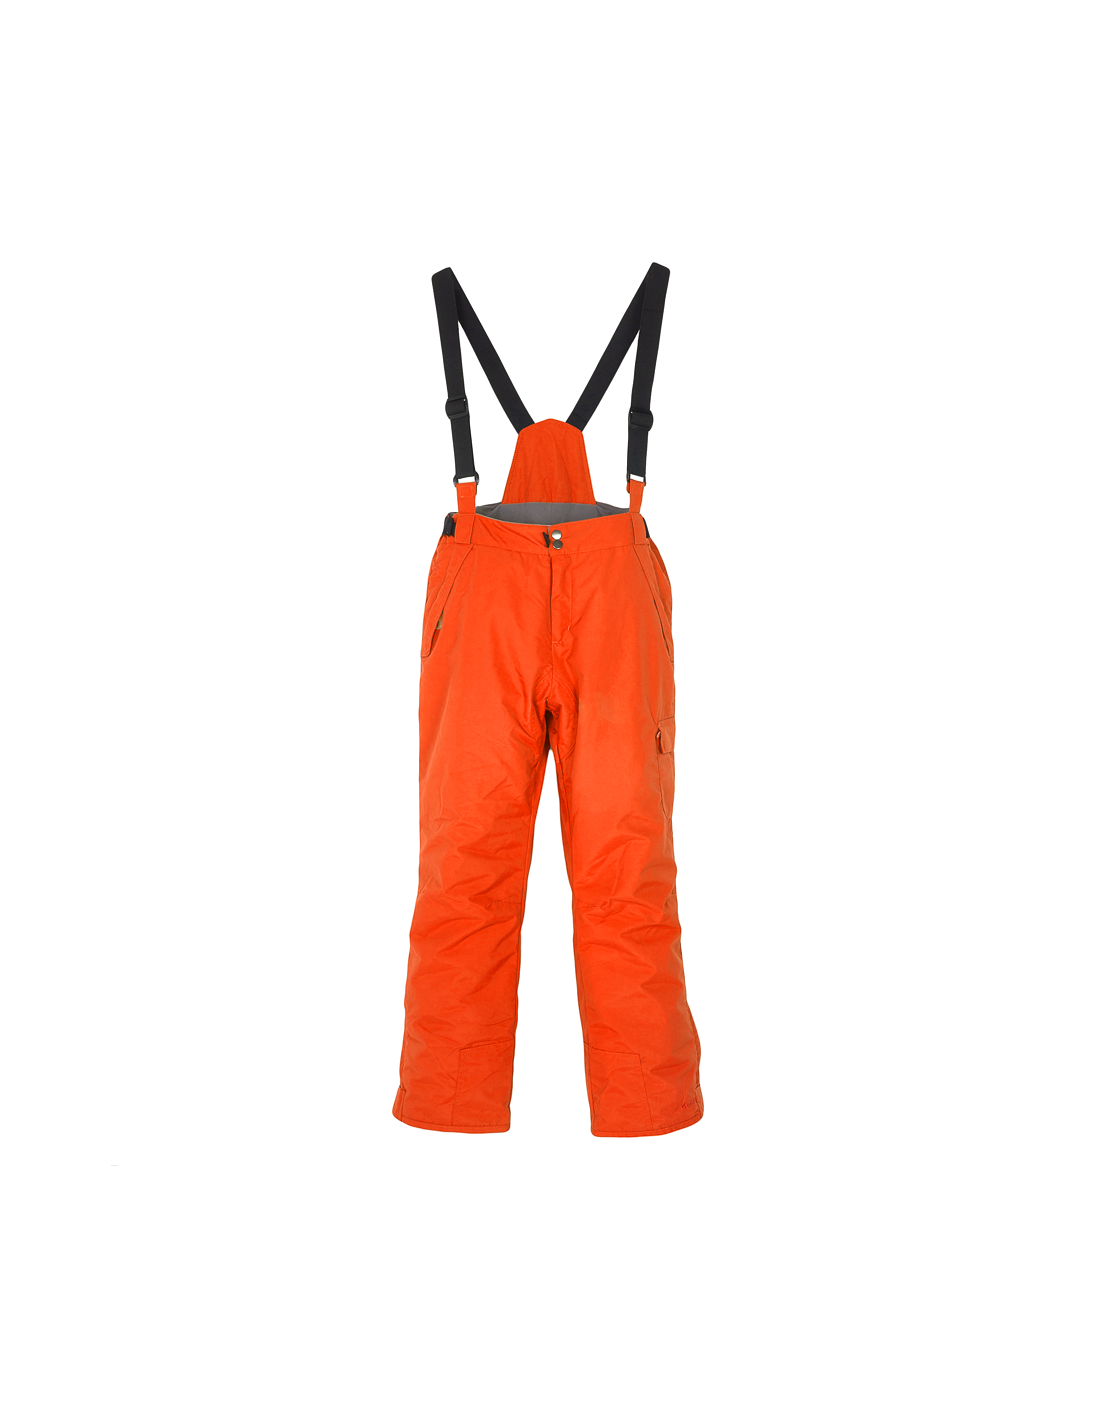 Chaussettes de ski Techniques Lhotse Syrtos Rouge Taille 39/42